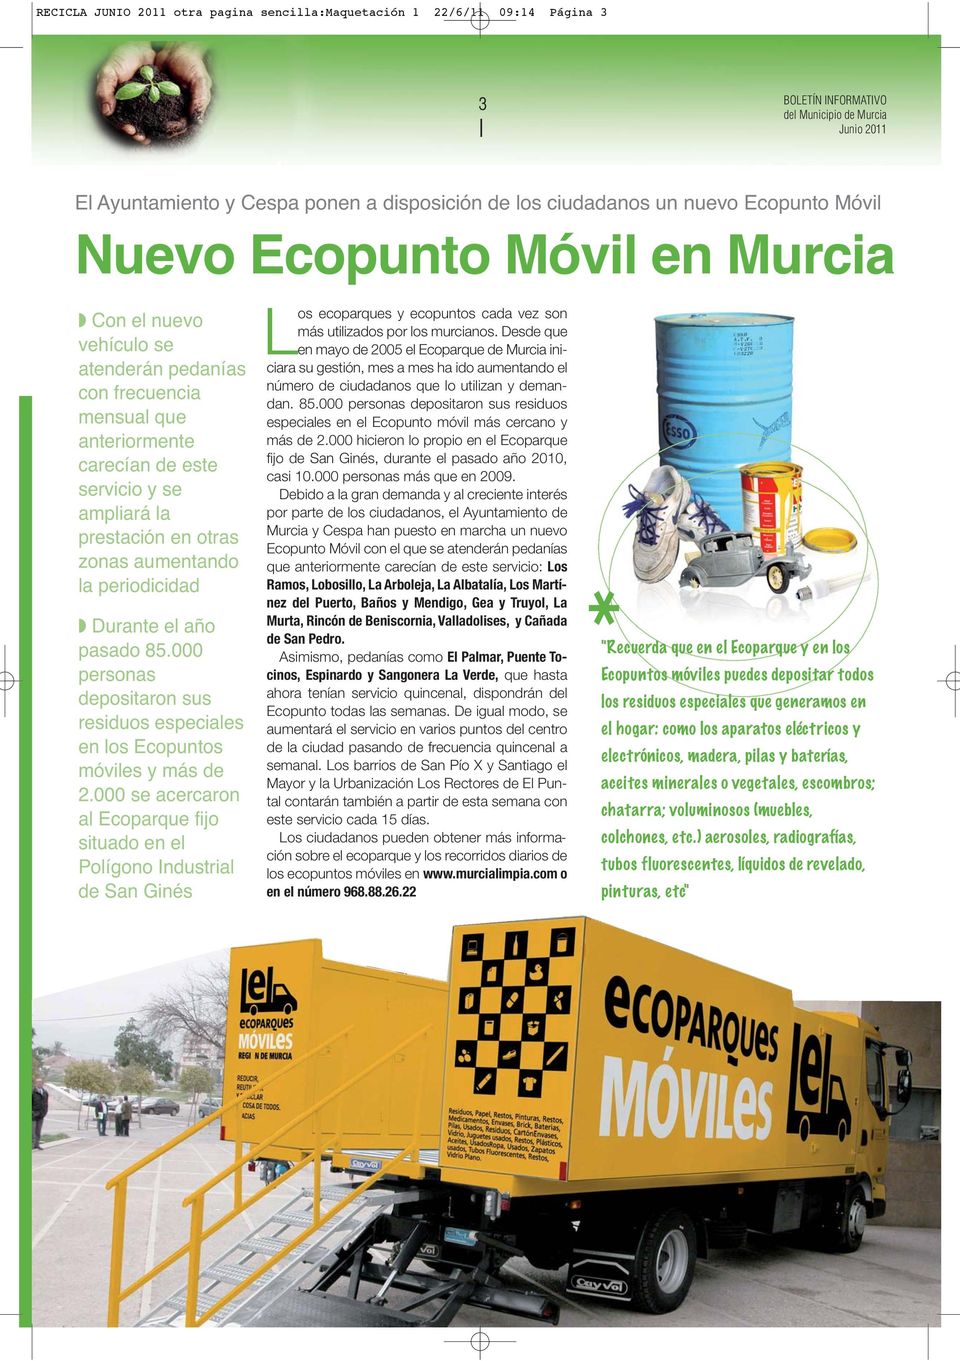 zonas aumentando la periodicidad Durante el año pasado 85.000 personas depositaron sus residuos especiales en los Ecopuntos móviles y más de 2.